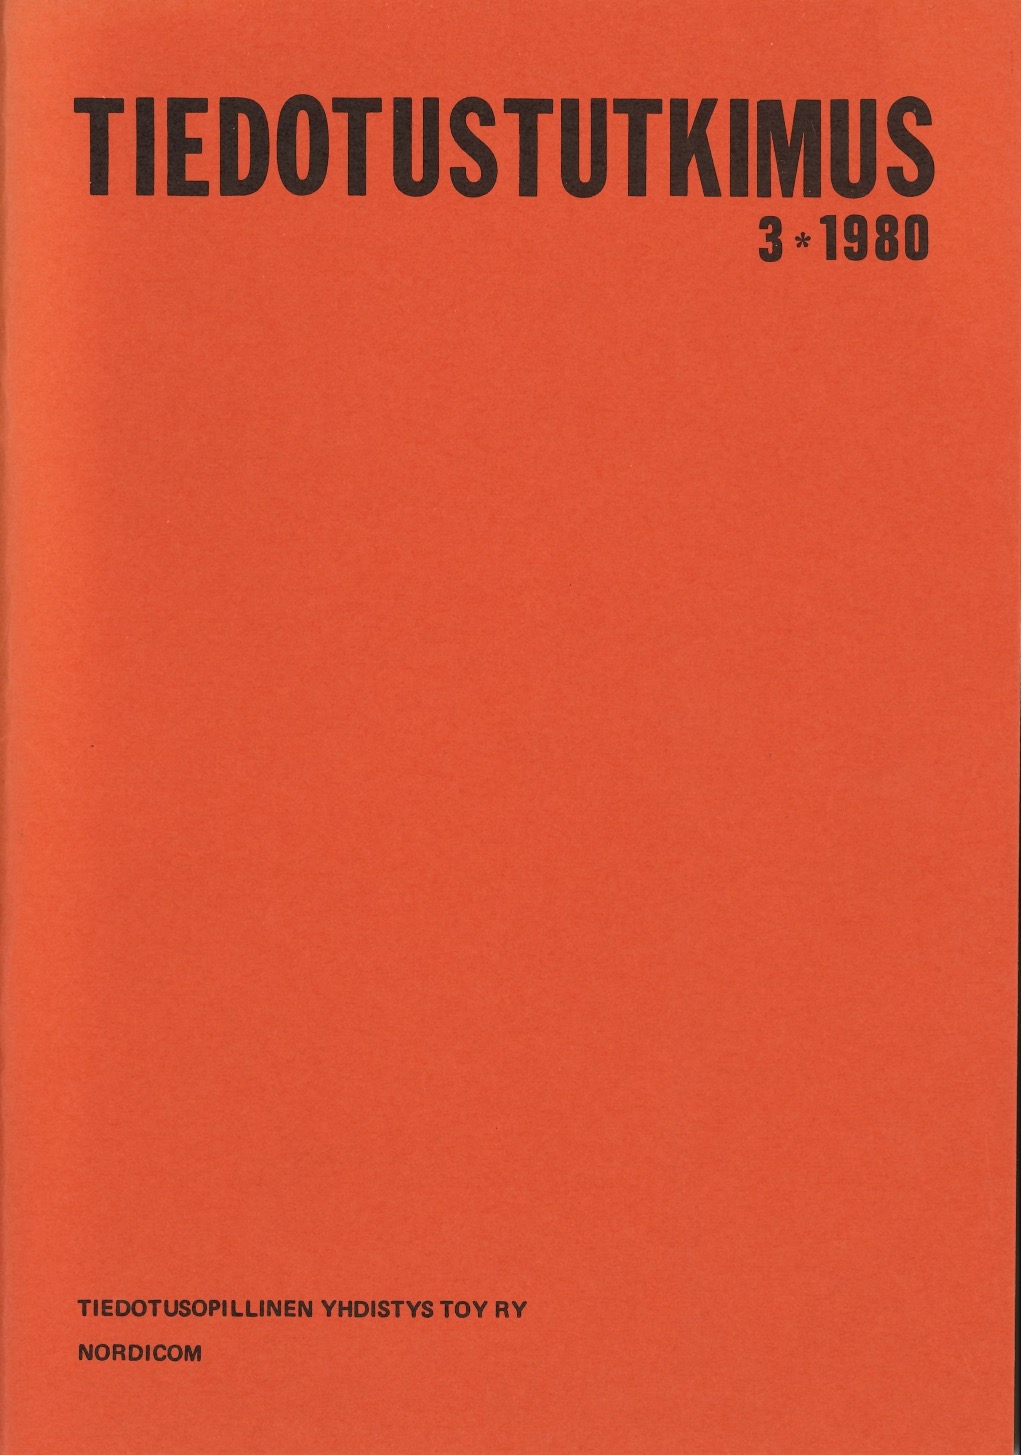 					Näytä Vol 3 Nro 3 (1980)
				